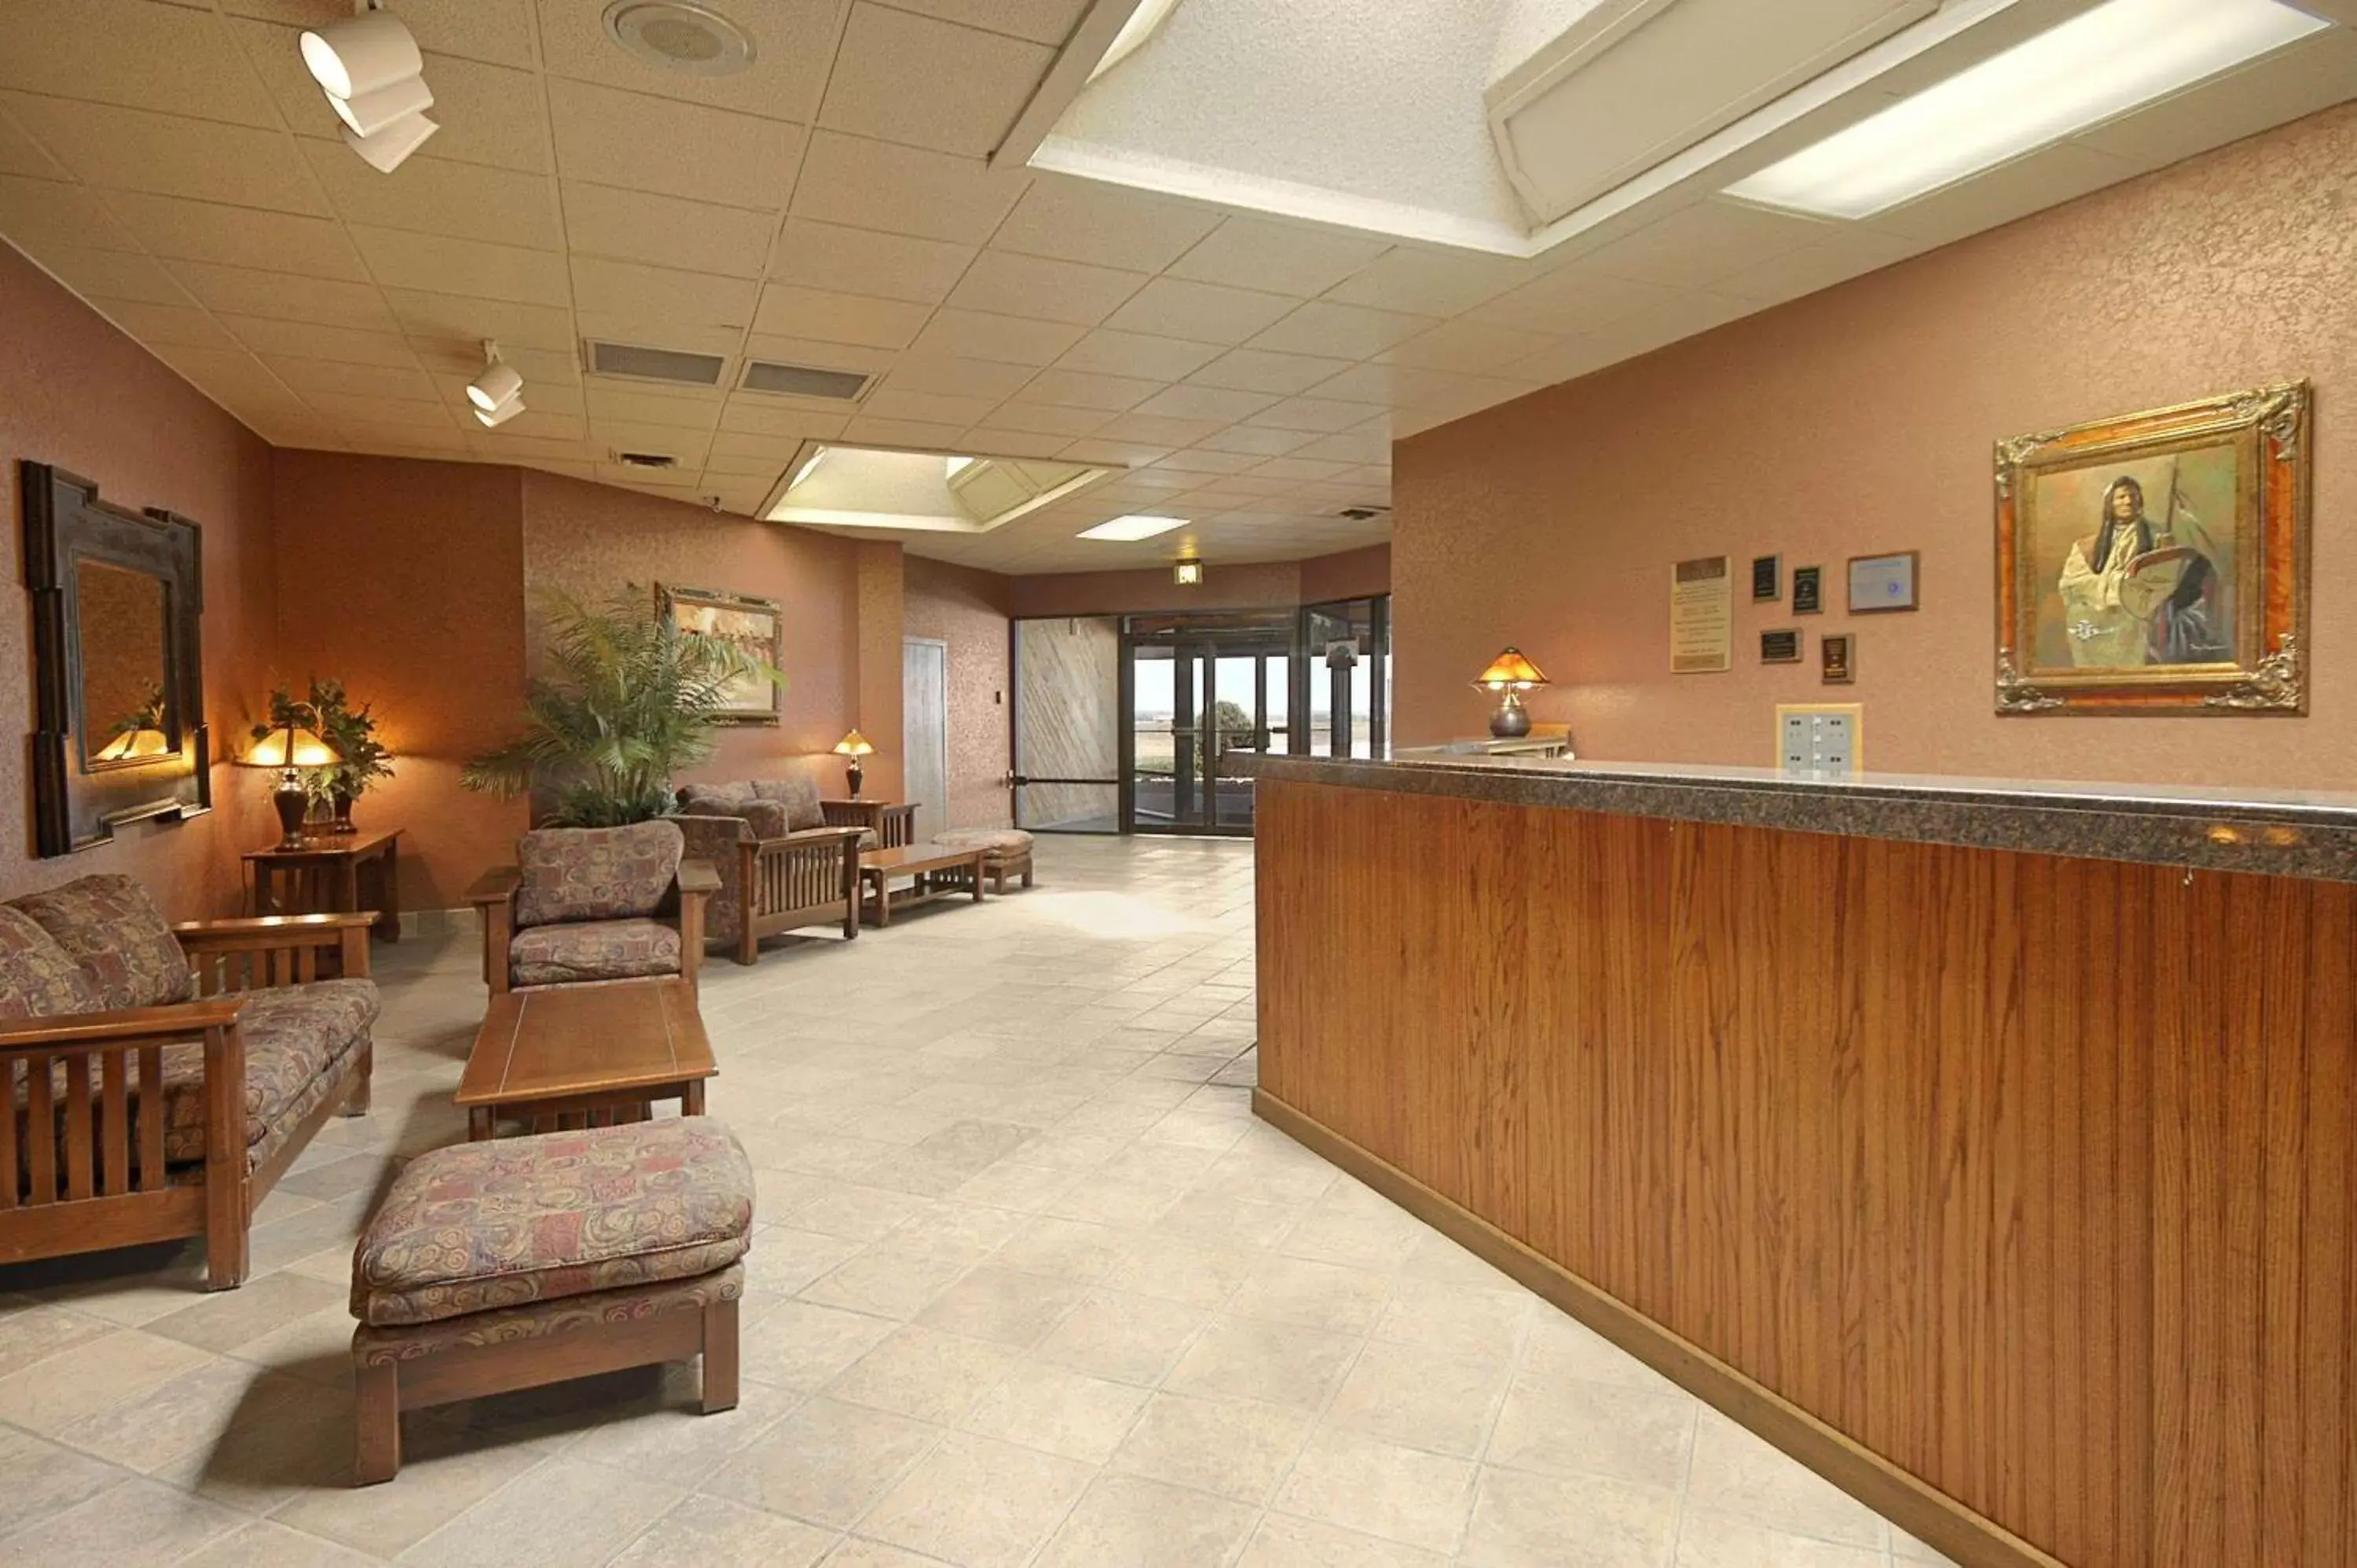 Lobby or reception, Lobby/Reception in Ramada by Wyndham Sterling